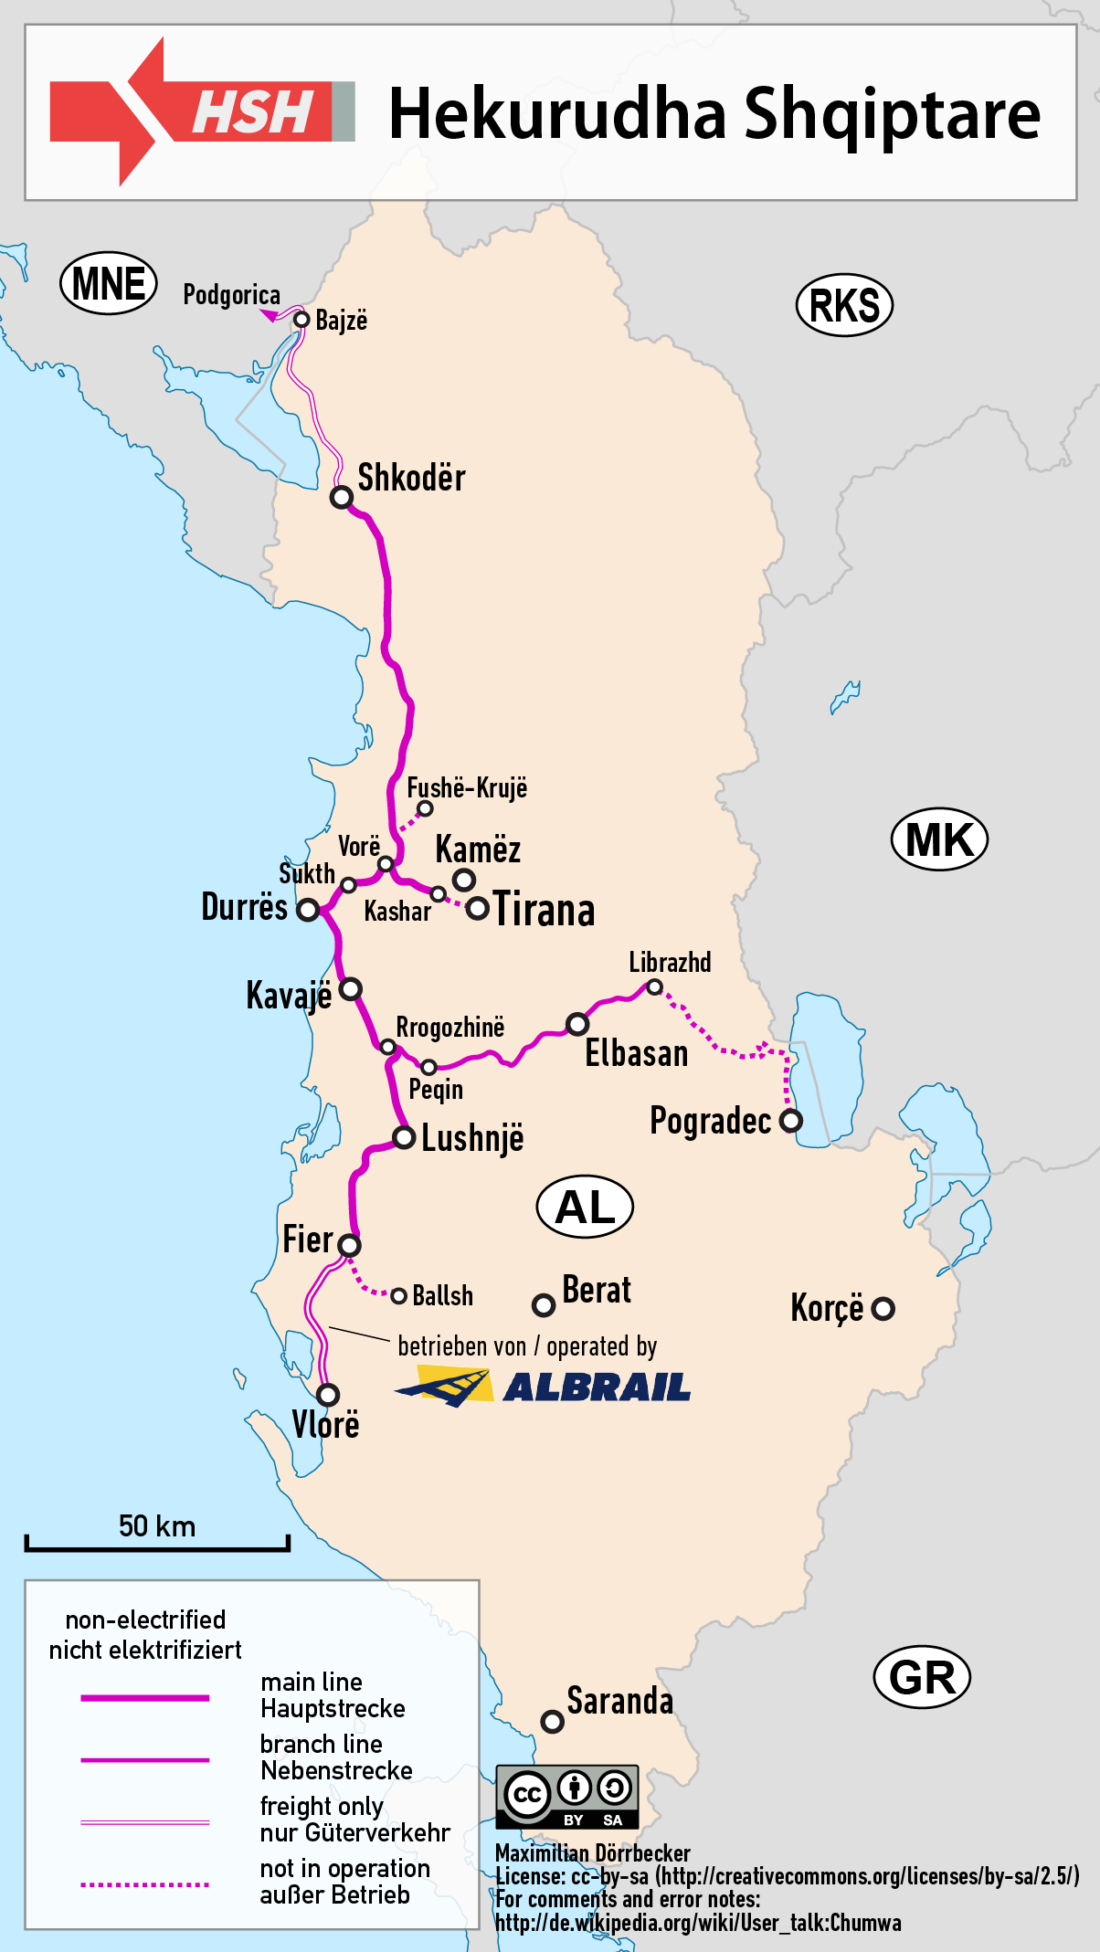 Albania sin coche: rutas, transporte - Foro Grecia y Balcanes